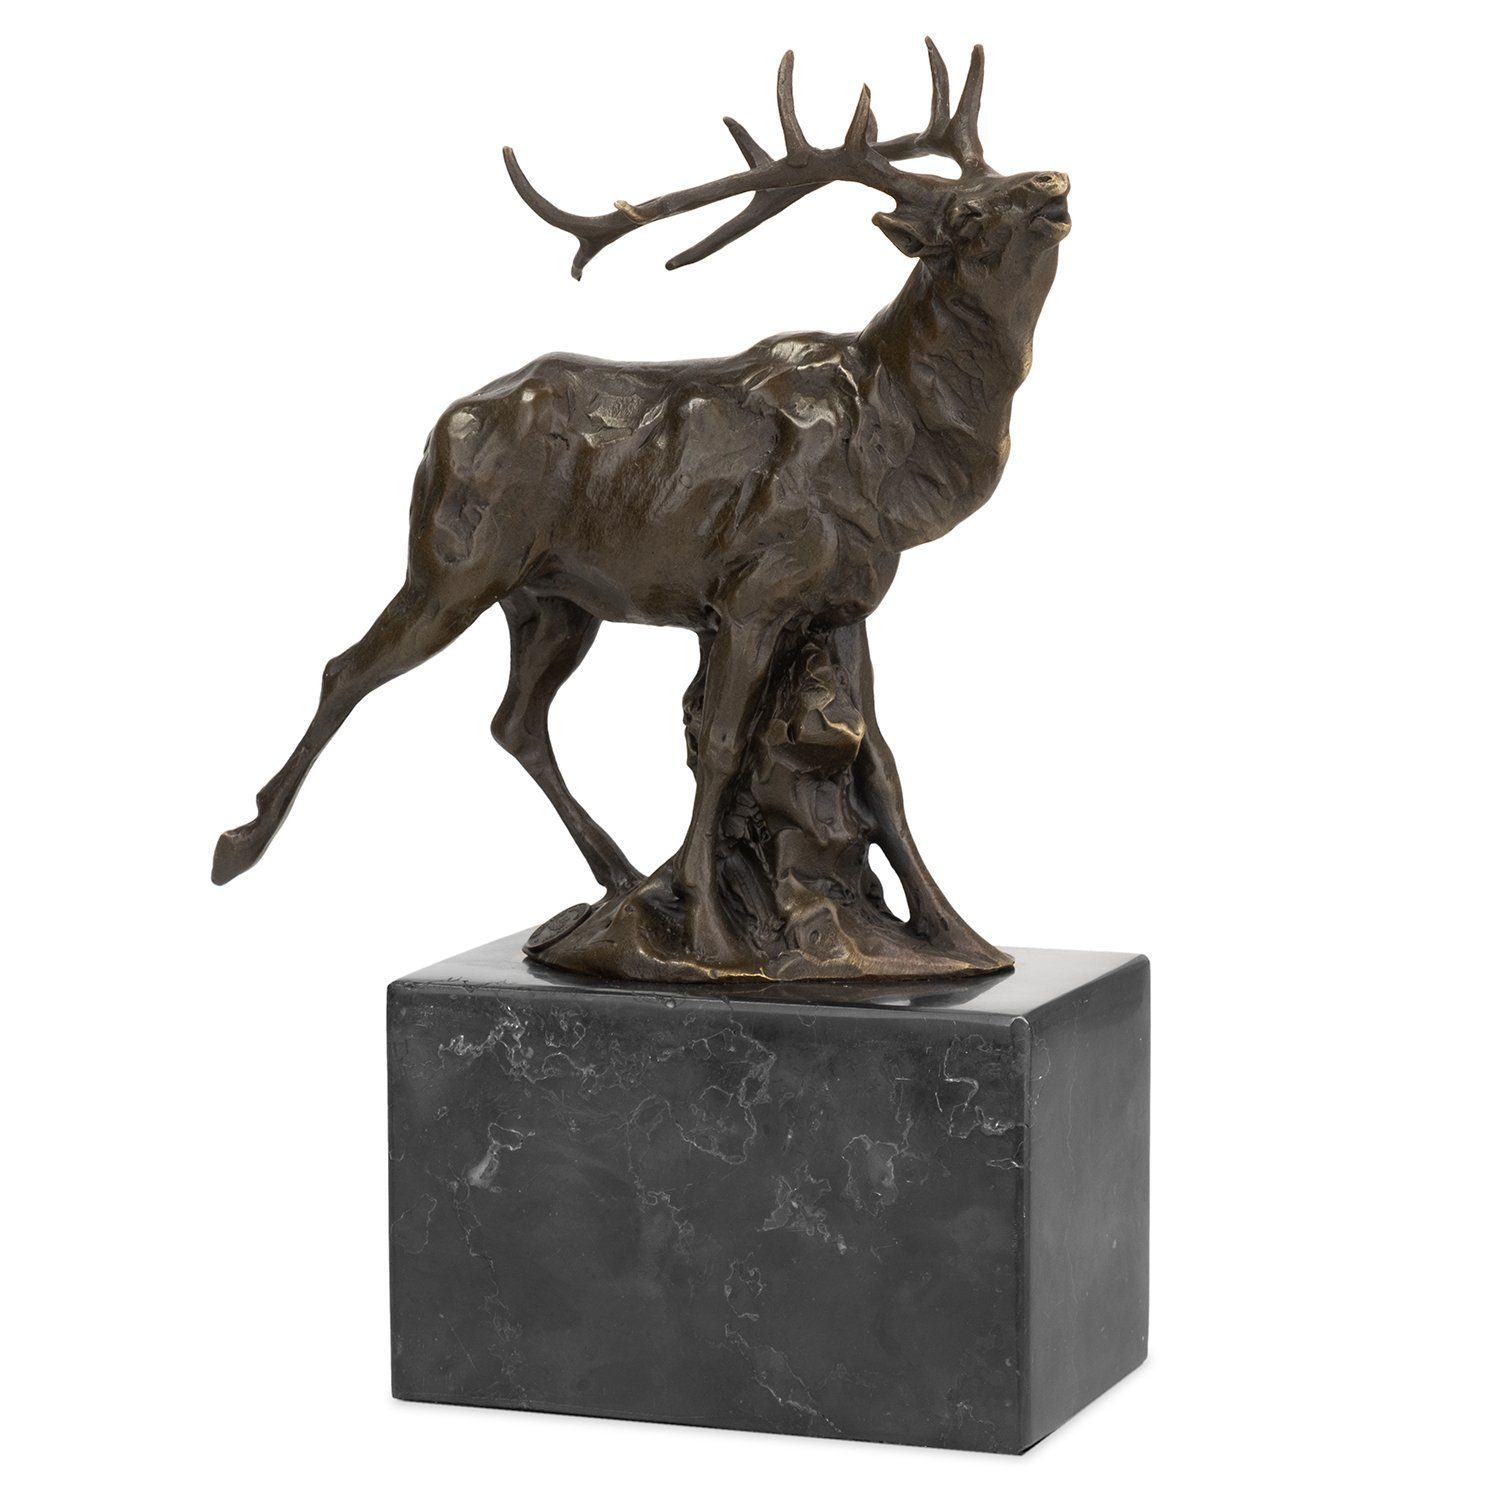 Moritz Skulptur Bronzefigur Rotwild, Bronzefigur Figuren Skulptur für Regal Vitrine Schreibtisch Deko | Skulpturen